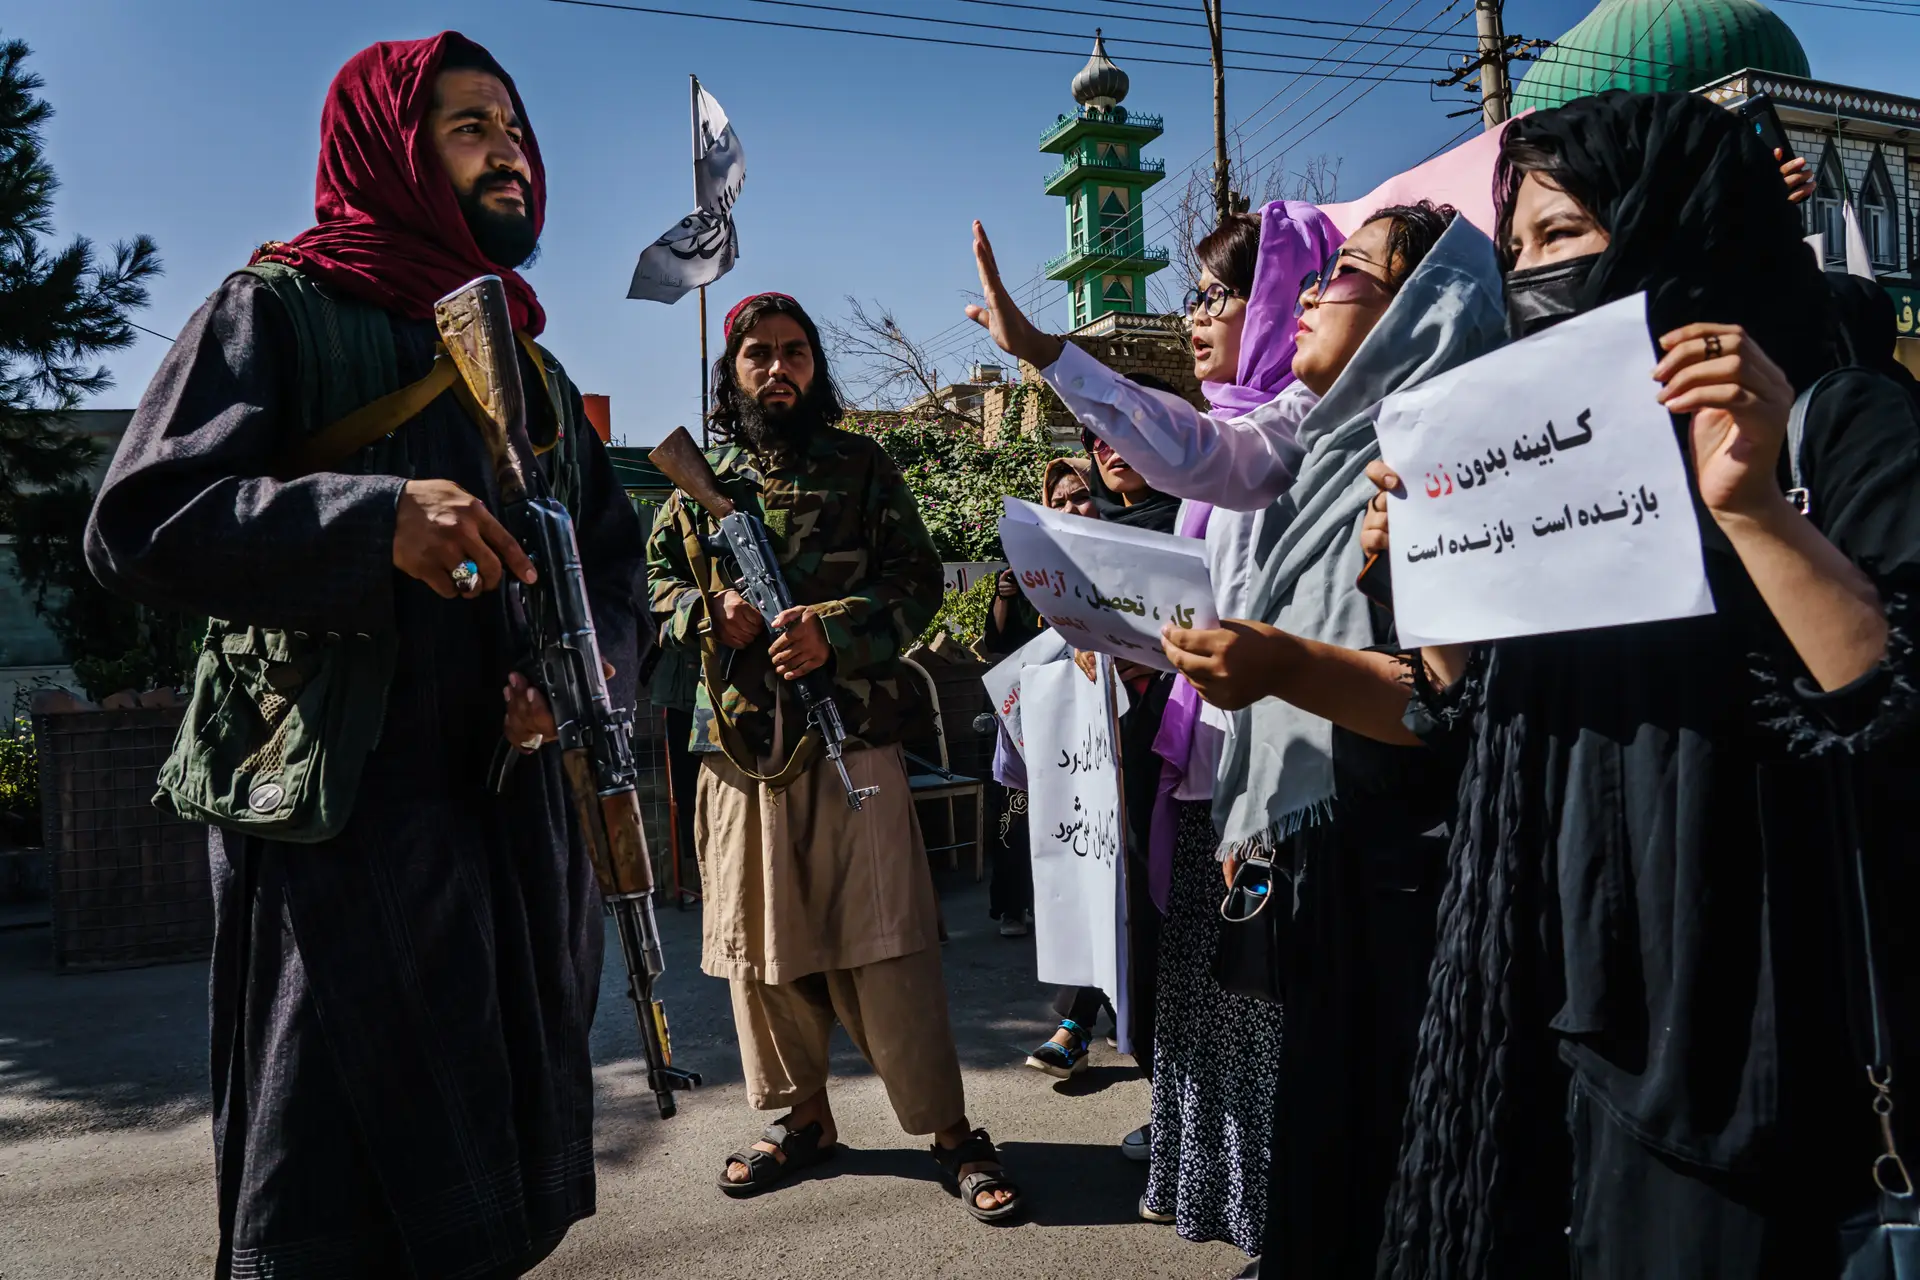 Afeganistão: UE avisa que reconhecimento internacional depende de direitos humanos